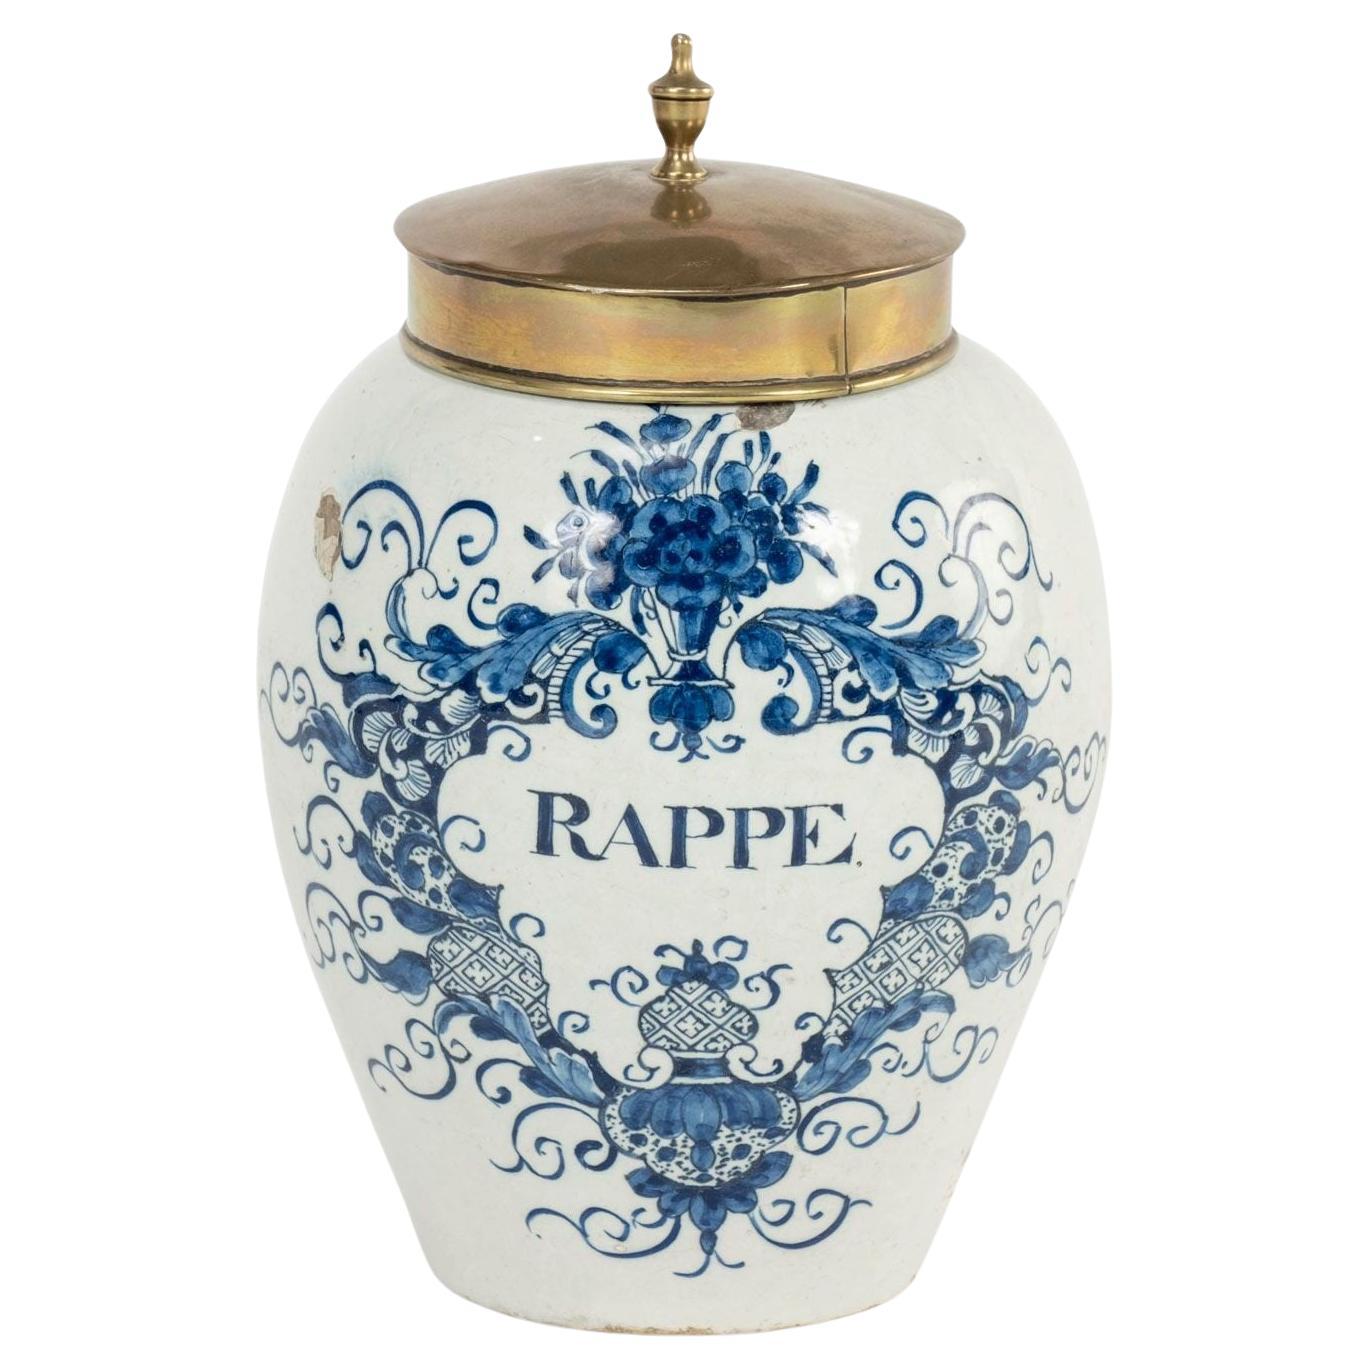 Delft Blau und Weiß "Rappe" Tabak JAR